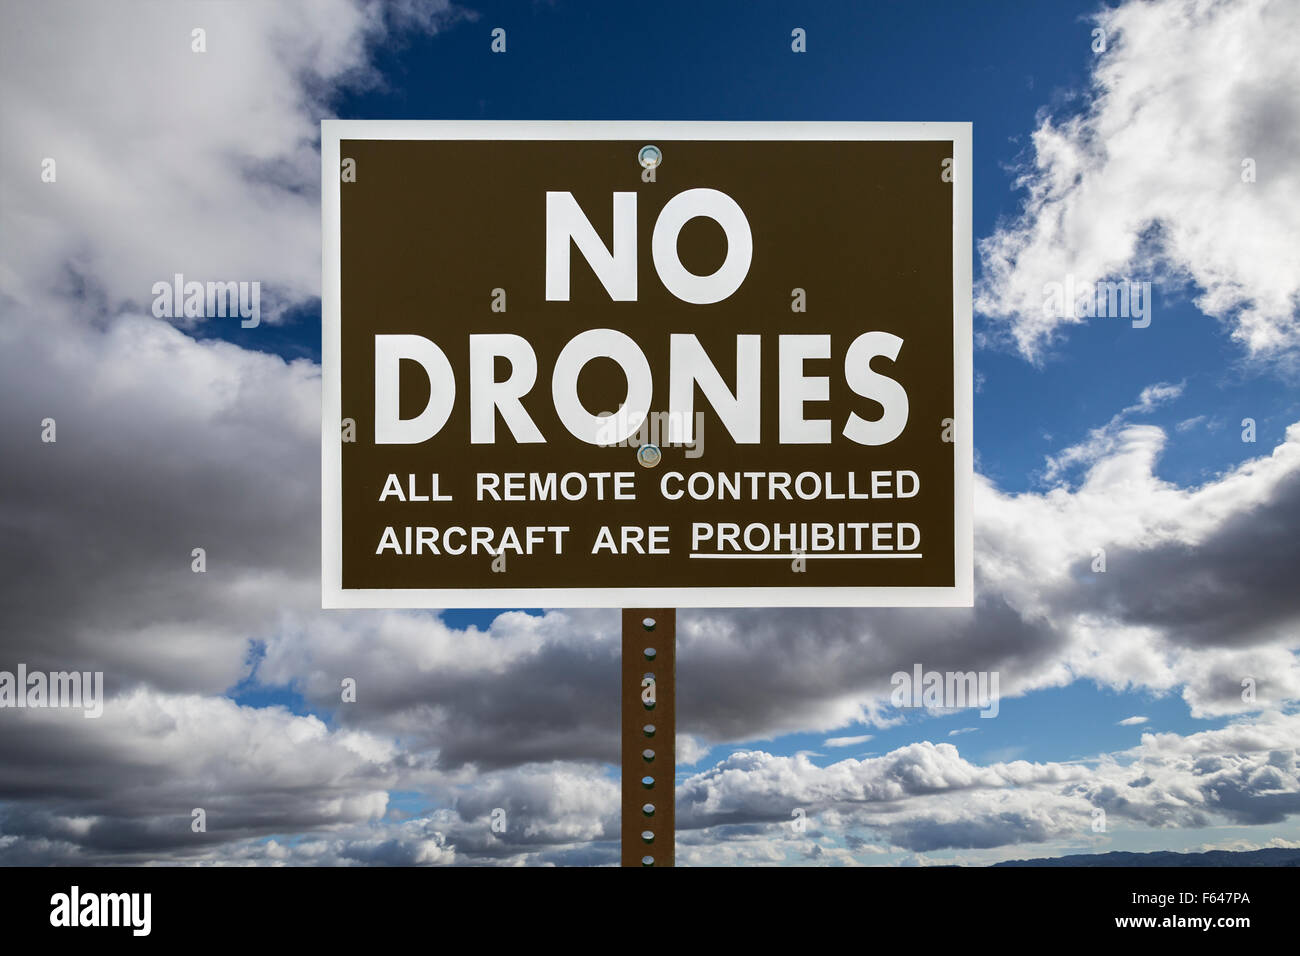 Pas de signer avec drones gathering storm clouds Banque D'Images